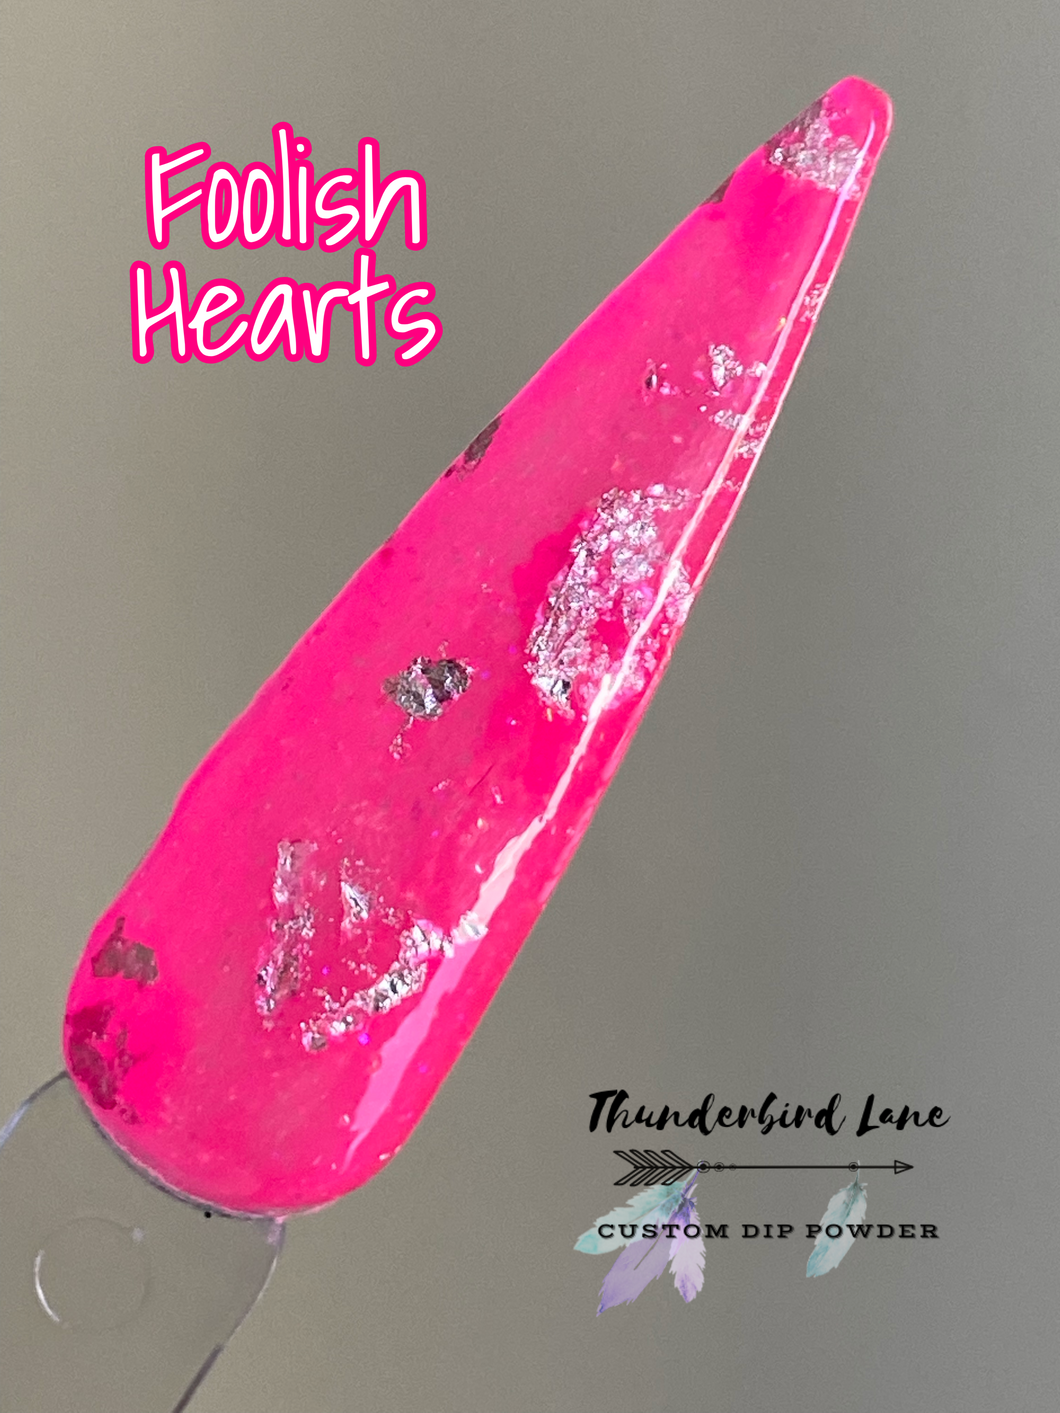 Foolish Hearts (No foil)